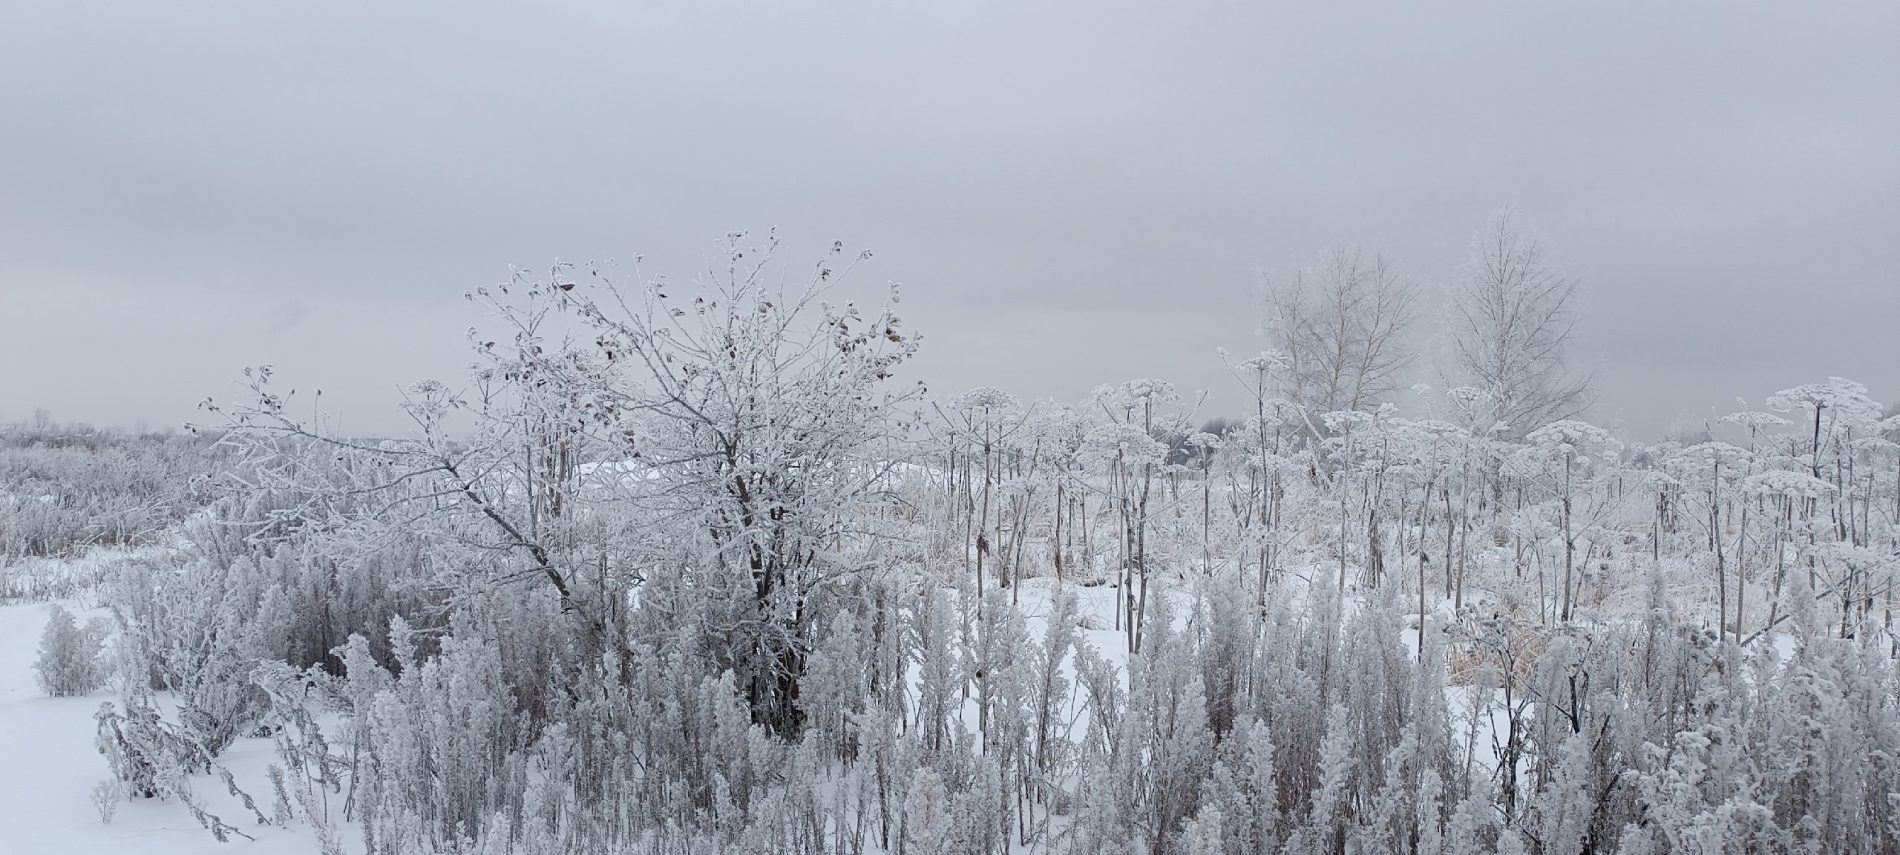 Аномальный холод заморозит все живое в Костромской области